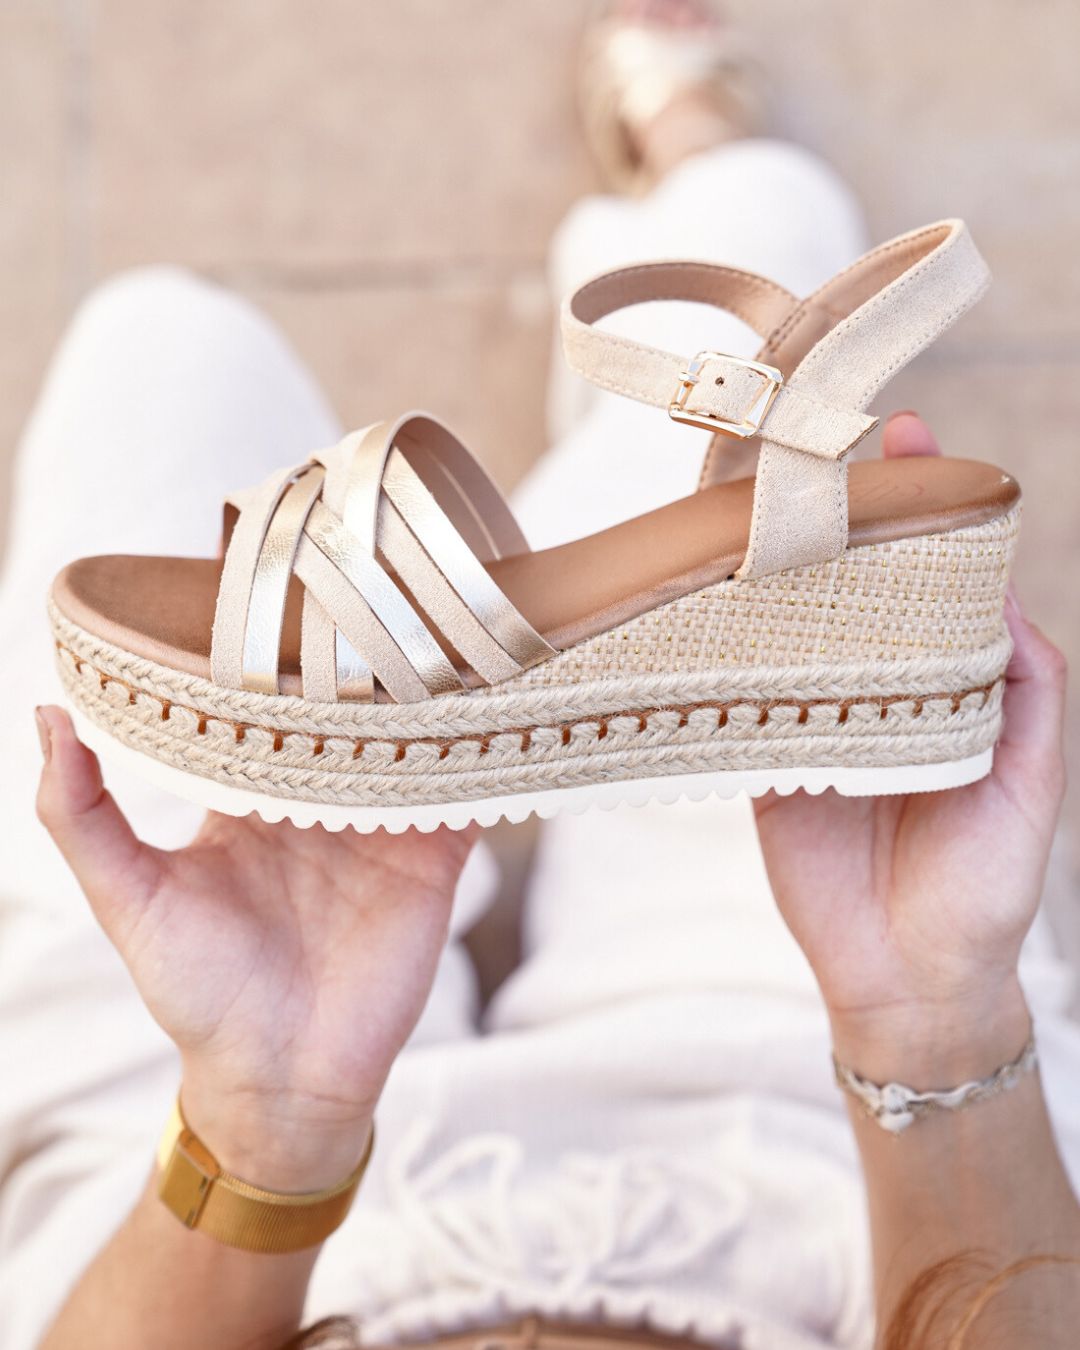 Sandale femme compensée confort beige - Alyson - Casualmode.de